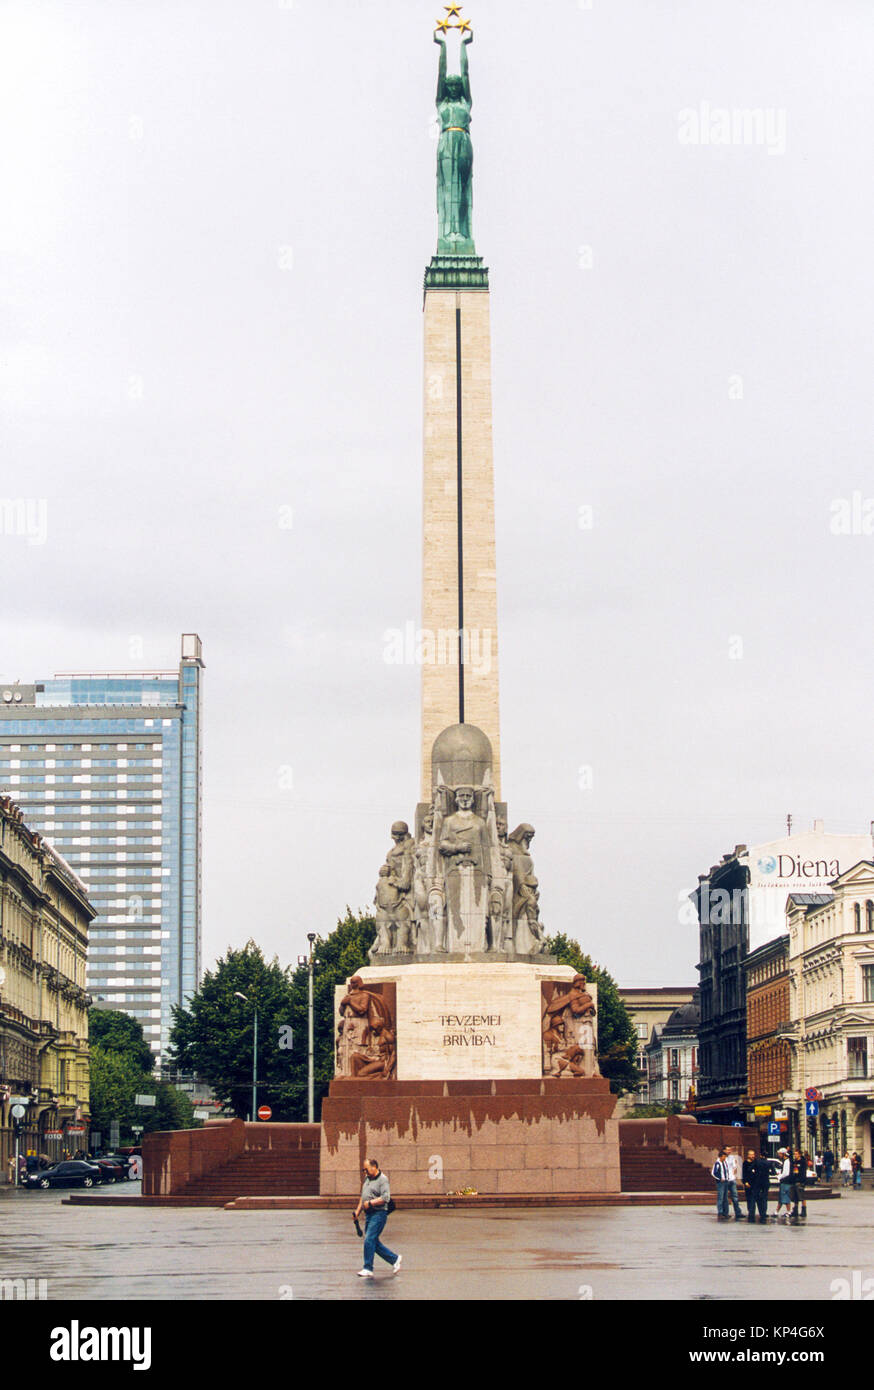 Freiheitsdenkmal in Riga Lettland Denkmal für ehren Soldaten während der lettischen Unabhängigkeit 1918 getötet Stockfoto